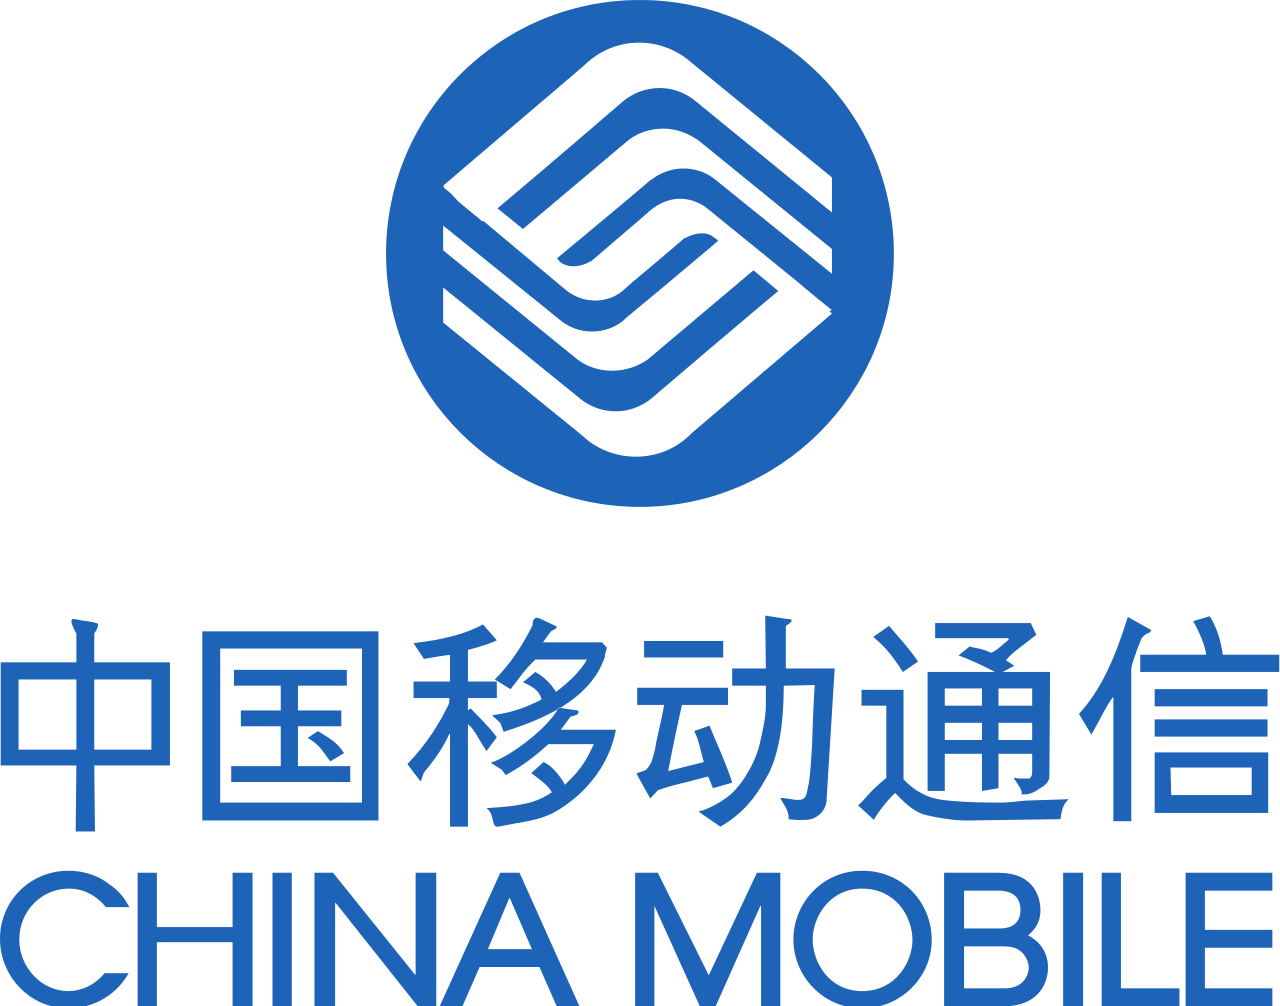 China Mobile Telecom Logo.